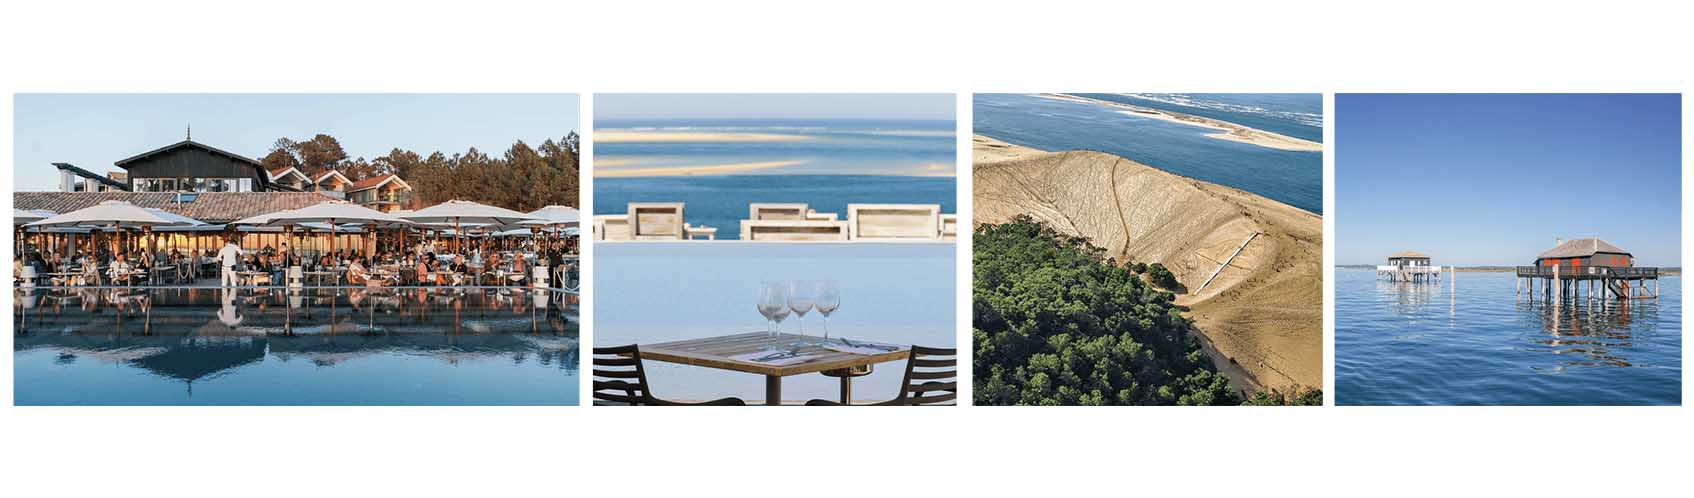 4 photos, 1 terrasse de la Coorniche, 2, vu sur l'océan et piscine à débordement de la Coorniche, 3, photo vu du ciel de la Dune du Pilat, 4, cabane sur l'île aux oiseaux